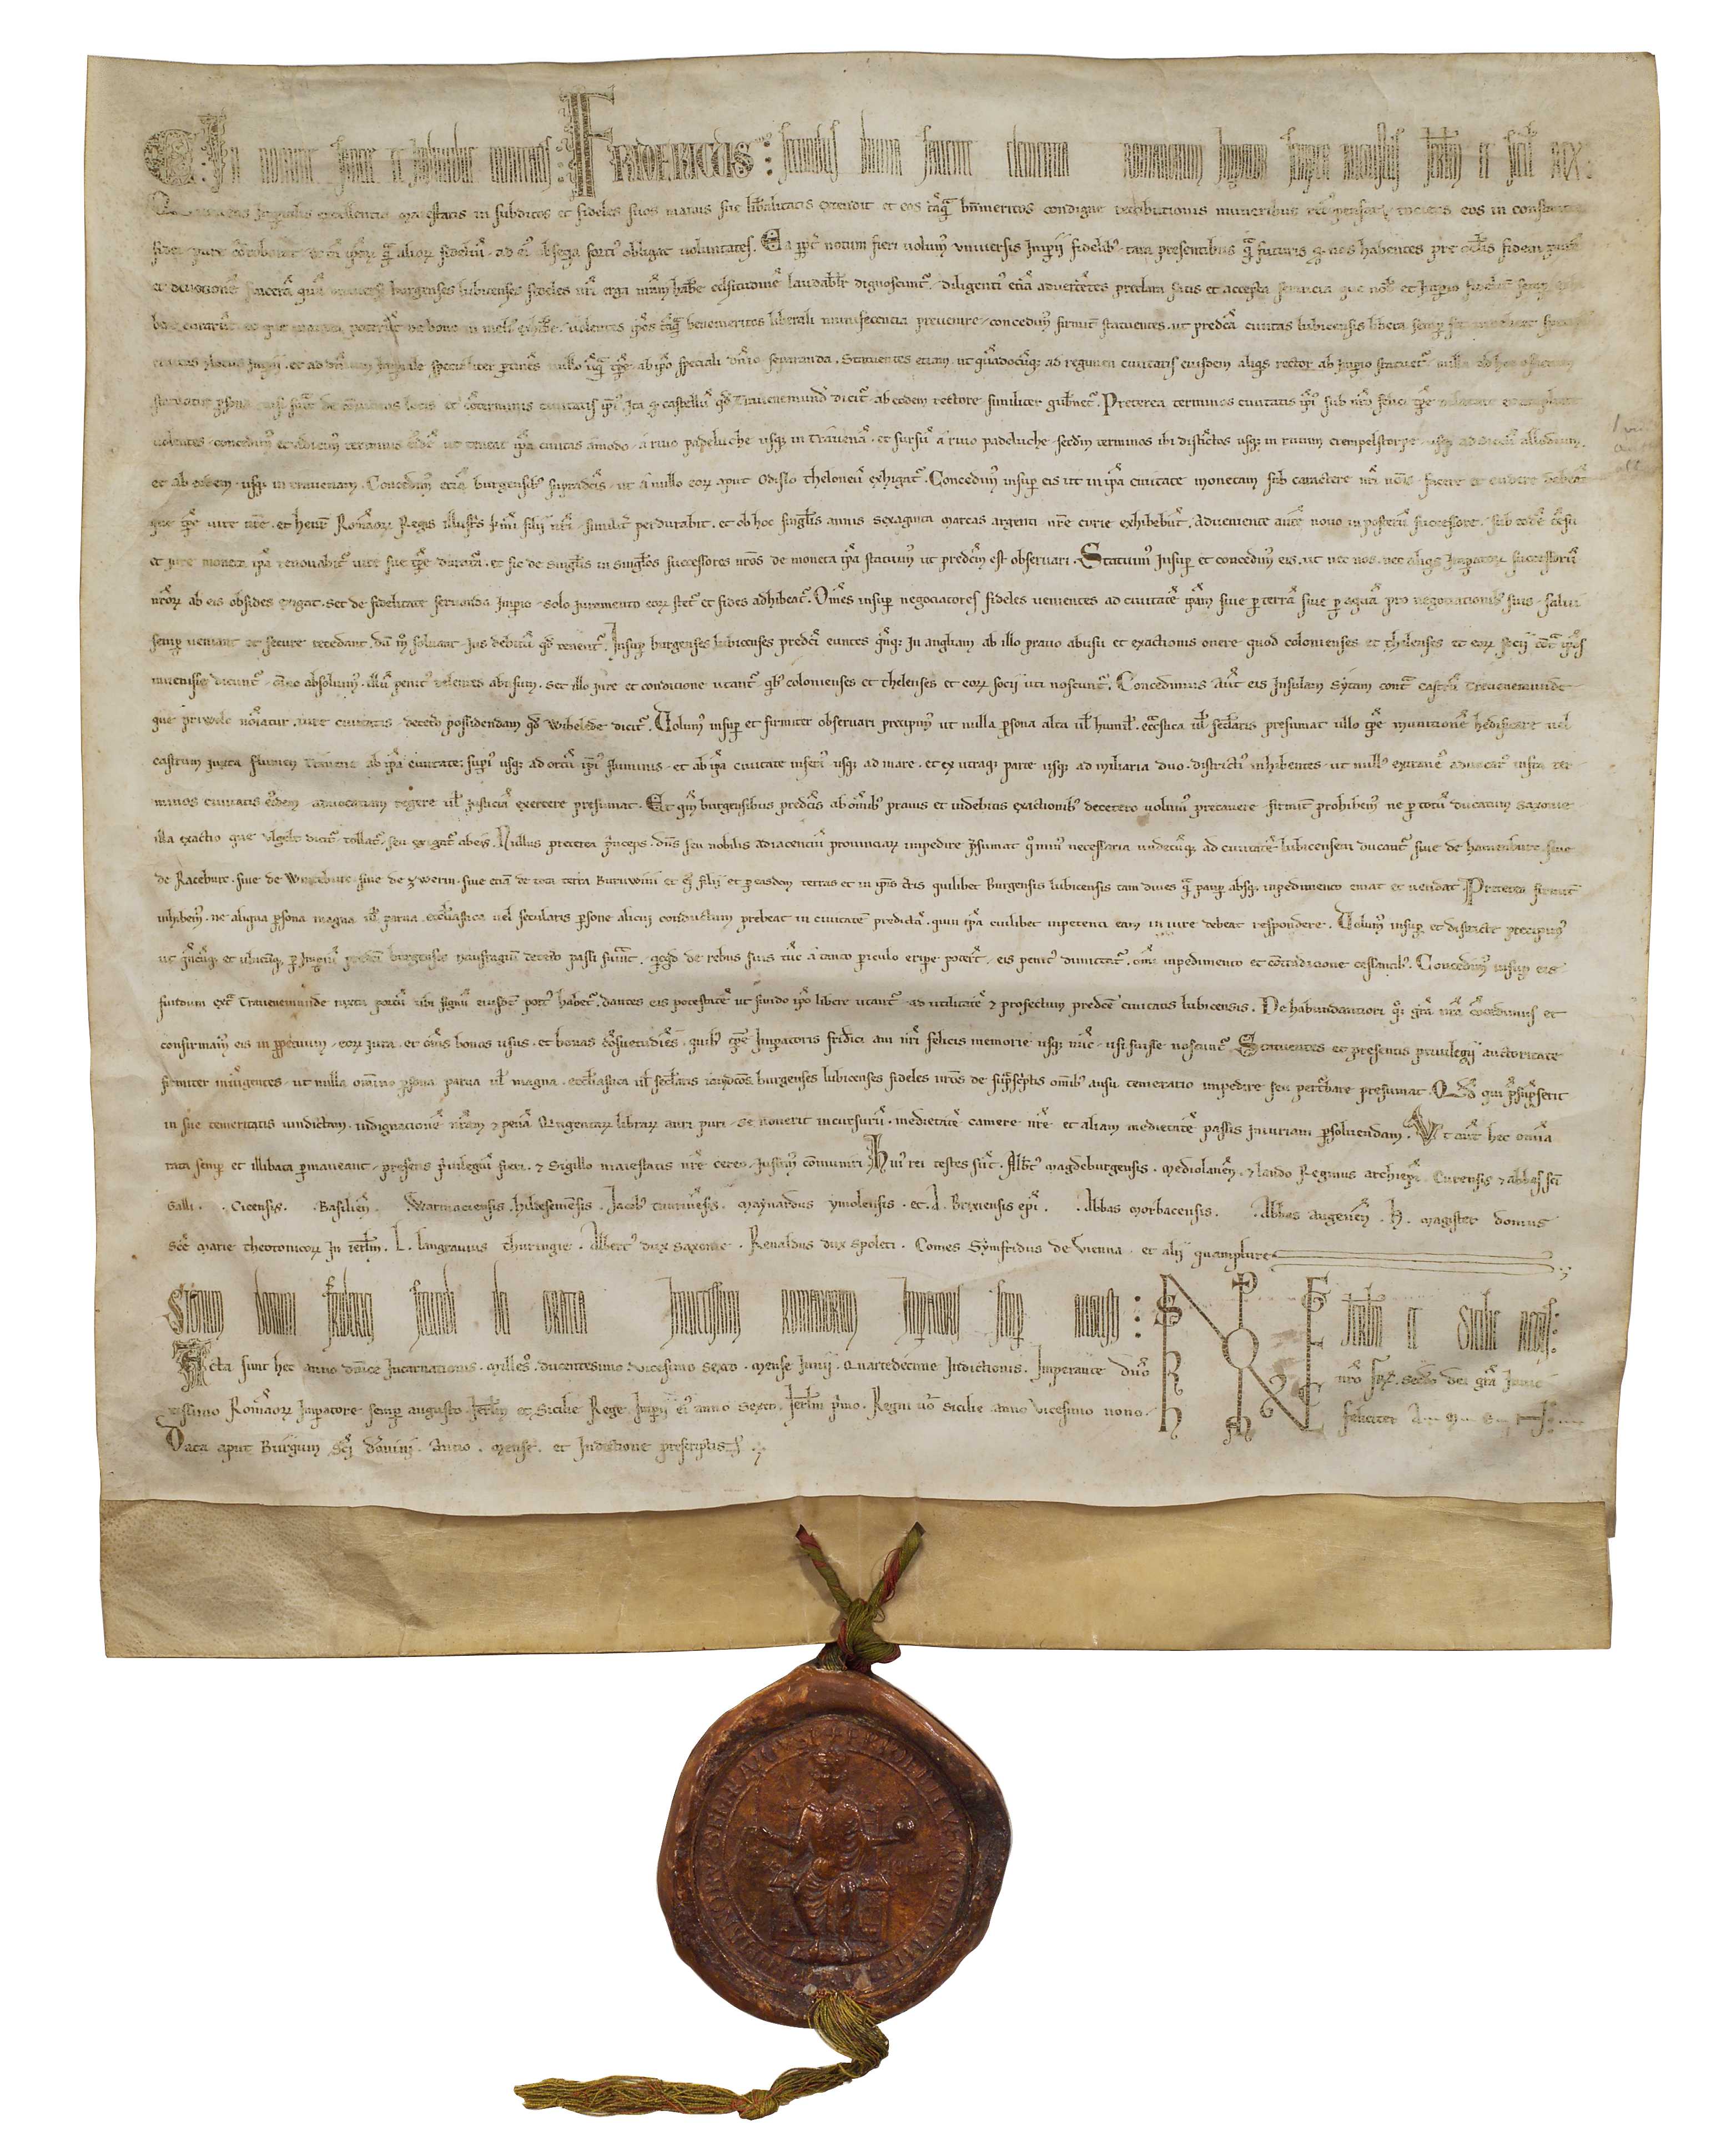 Reichsfreiheitsbrief, 1226 (Stadtarchiv Lübeck, 7.1-3.9 Caesarea 4-1)